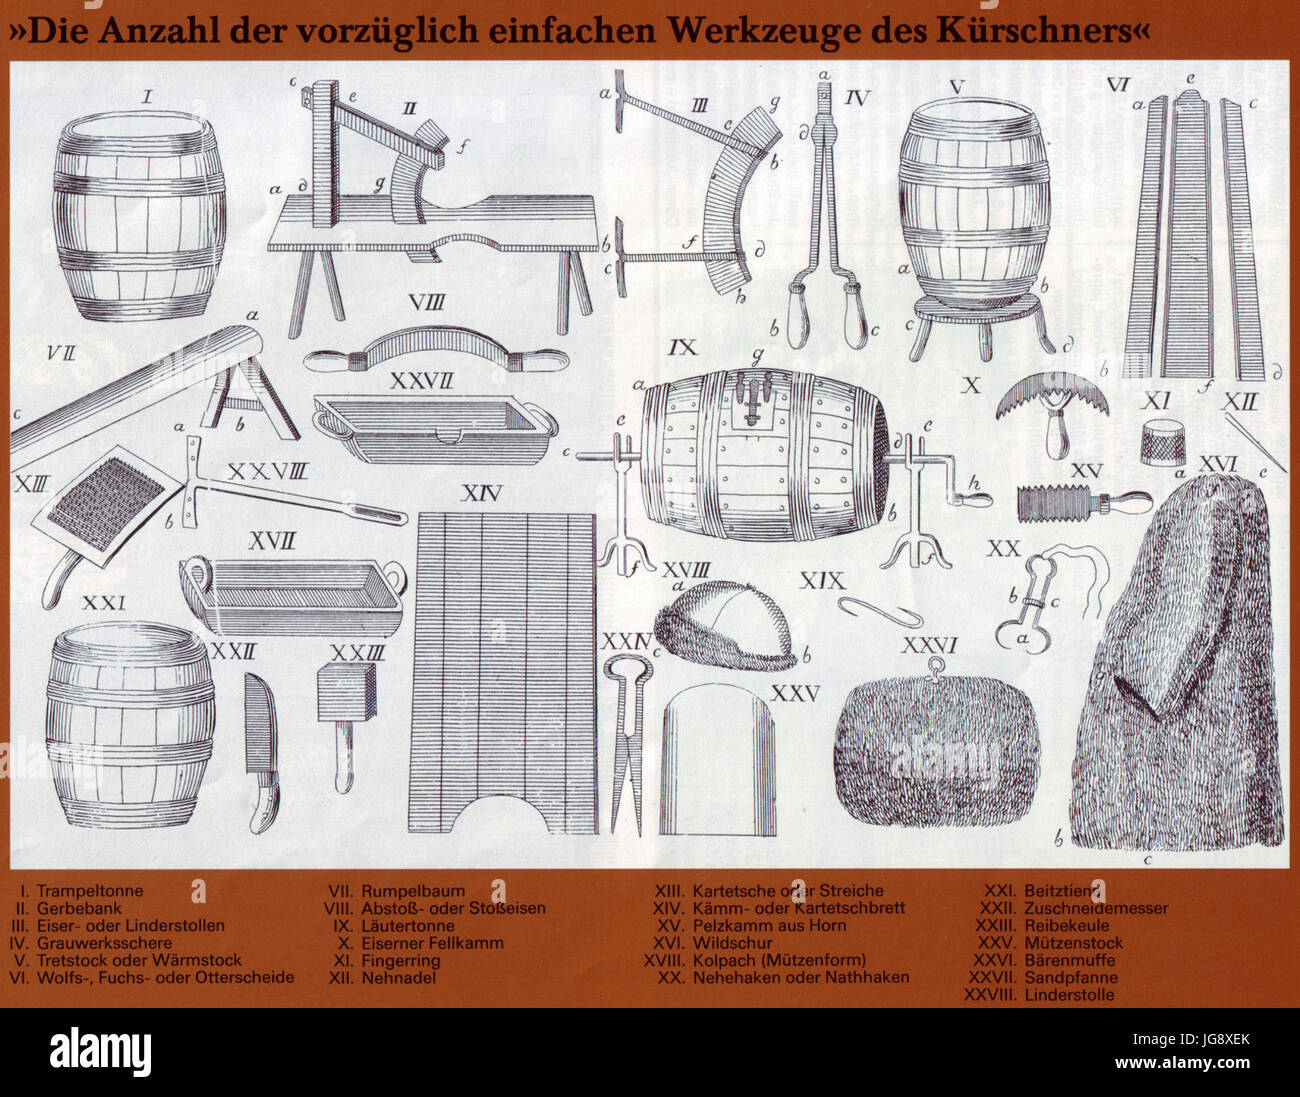 Werkzeuge des Kürschners, Sprengel 1782 Stock Photo